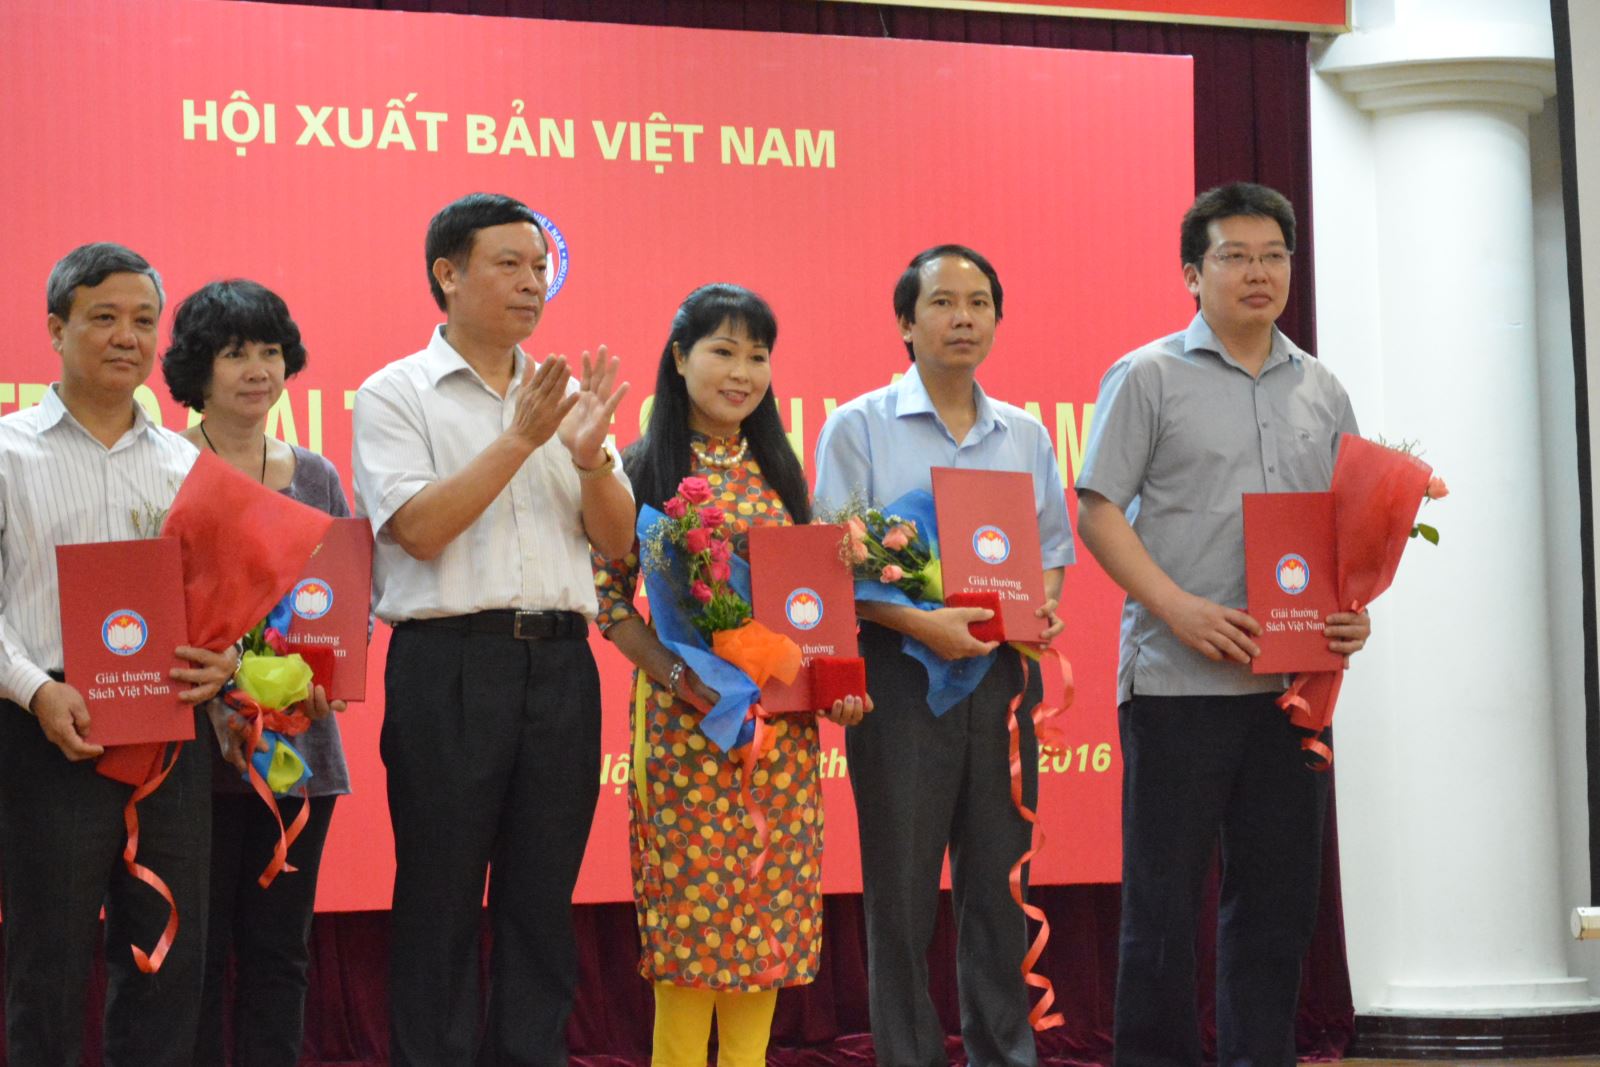 Từ  điển bách khoa Britannica nhận giải bạc Sách hay, giải vàng Sách đẹp Giải thưởng Sách Việt Nam năm 2015